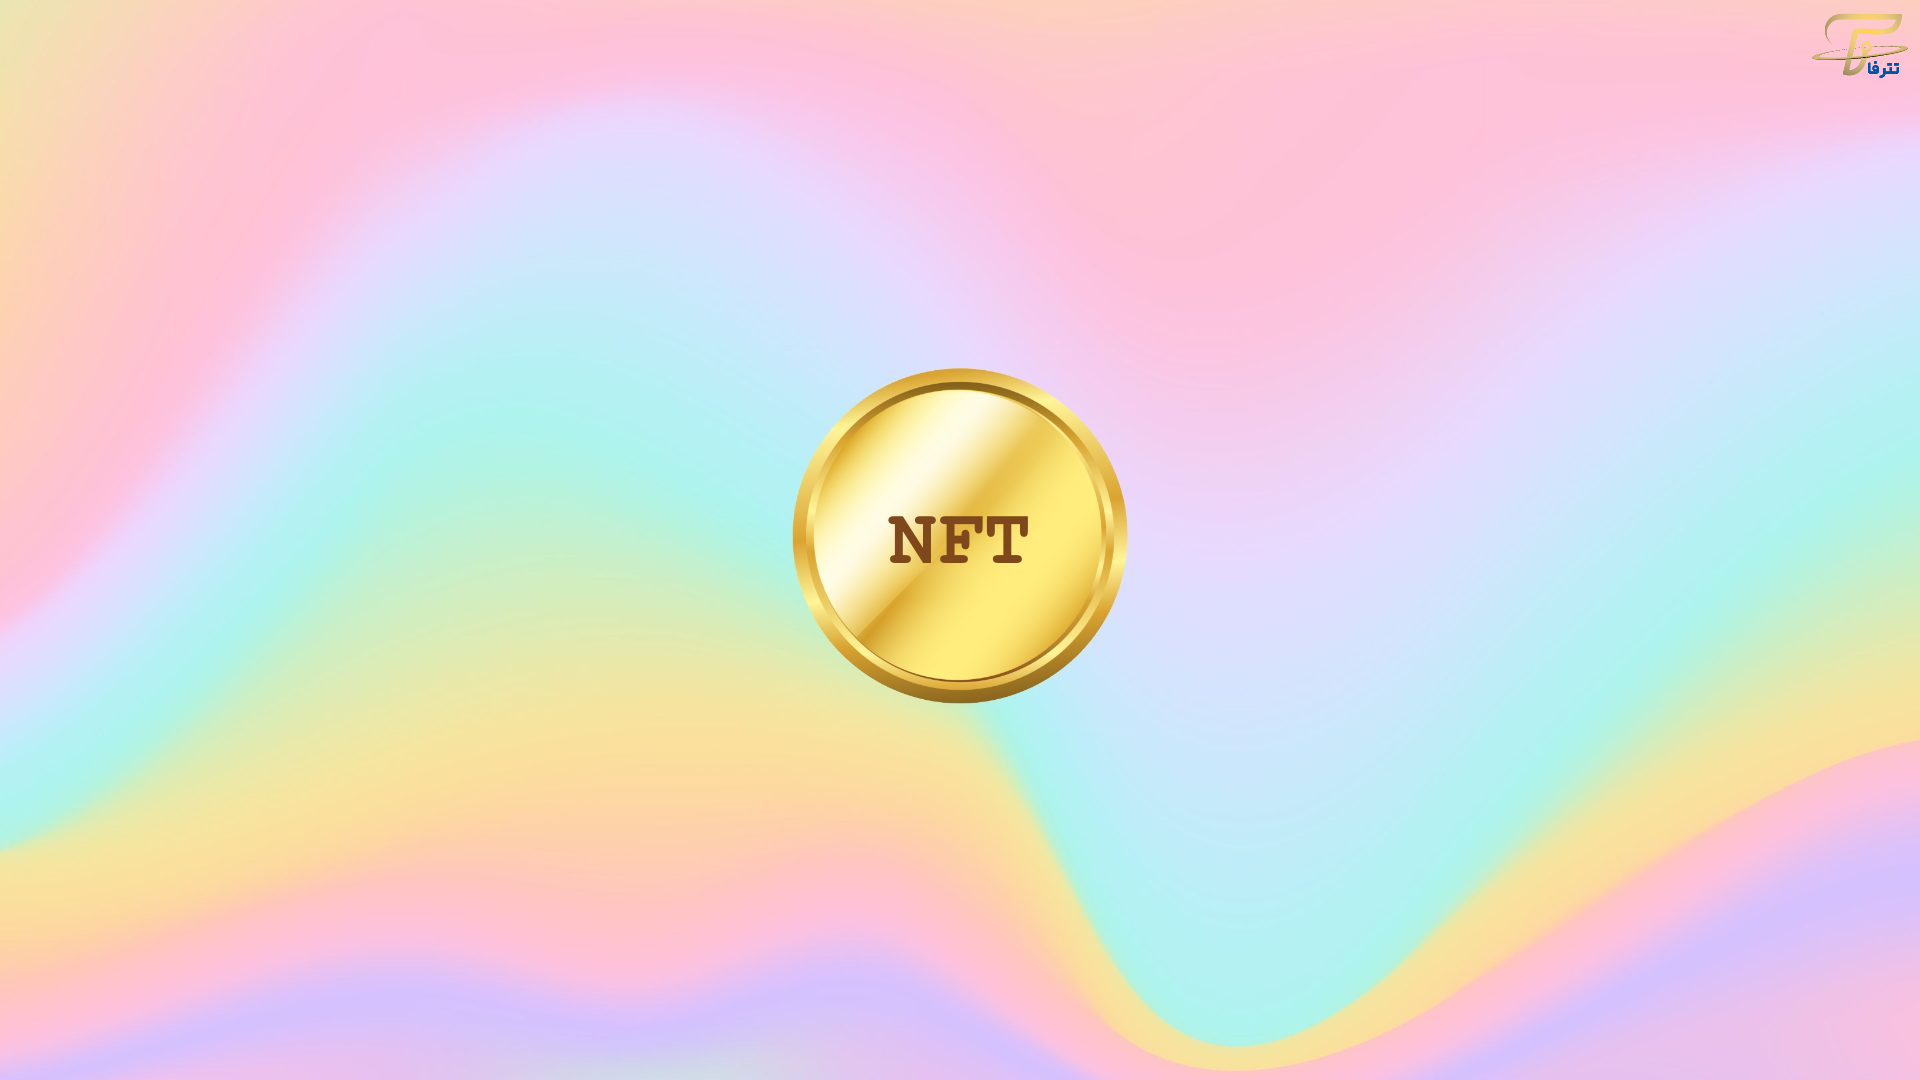 فروش NFT چه مشکلاتی به همراه دارد؟